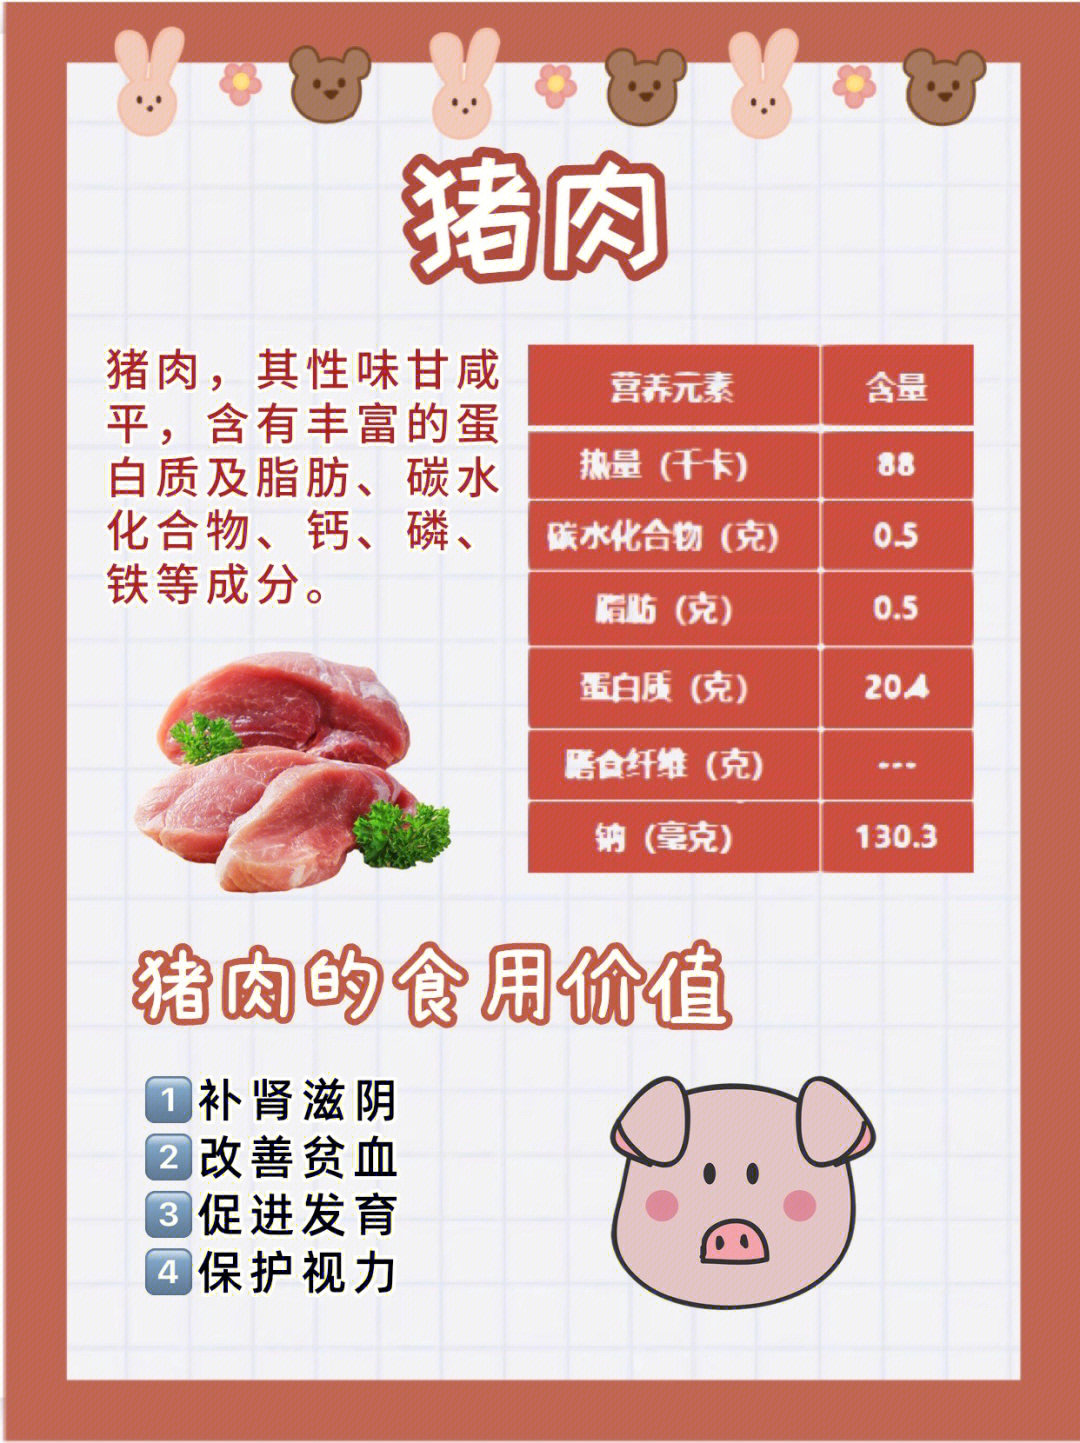 瘦猪肉的营养成分图片